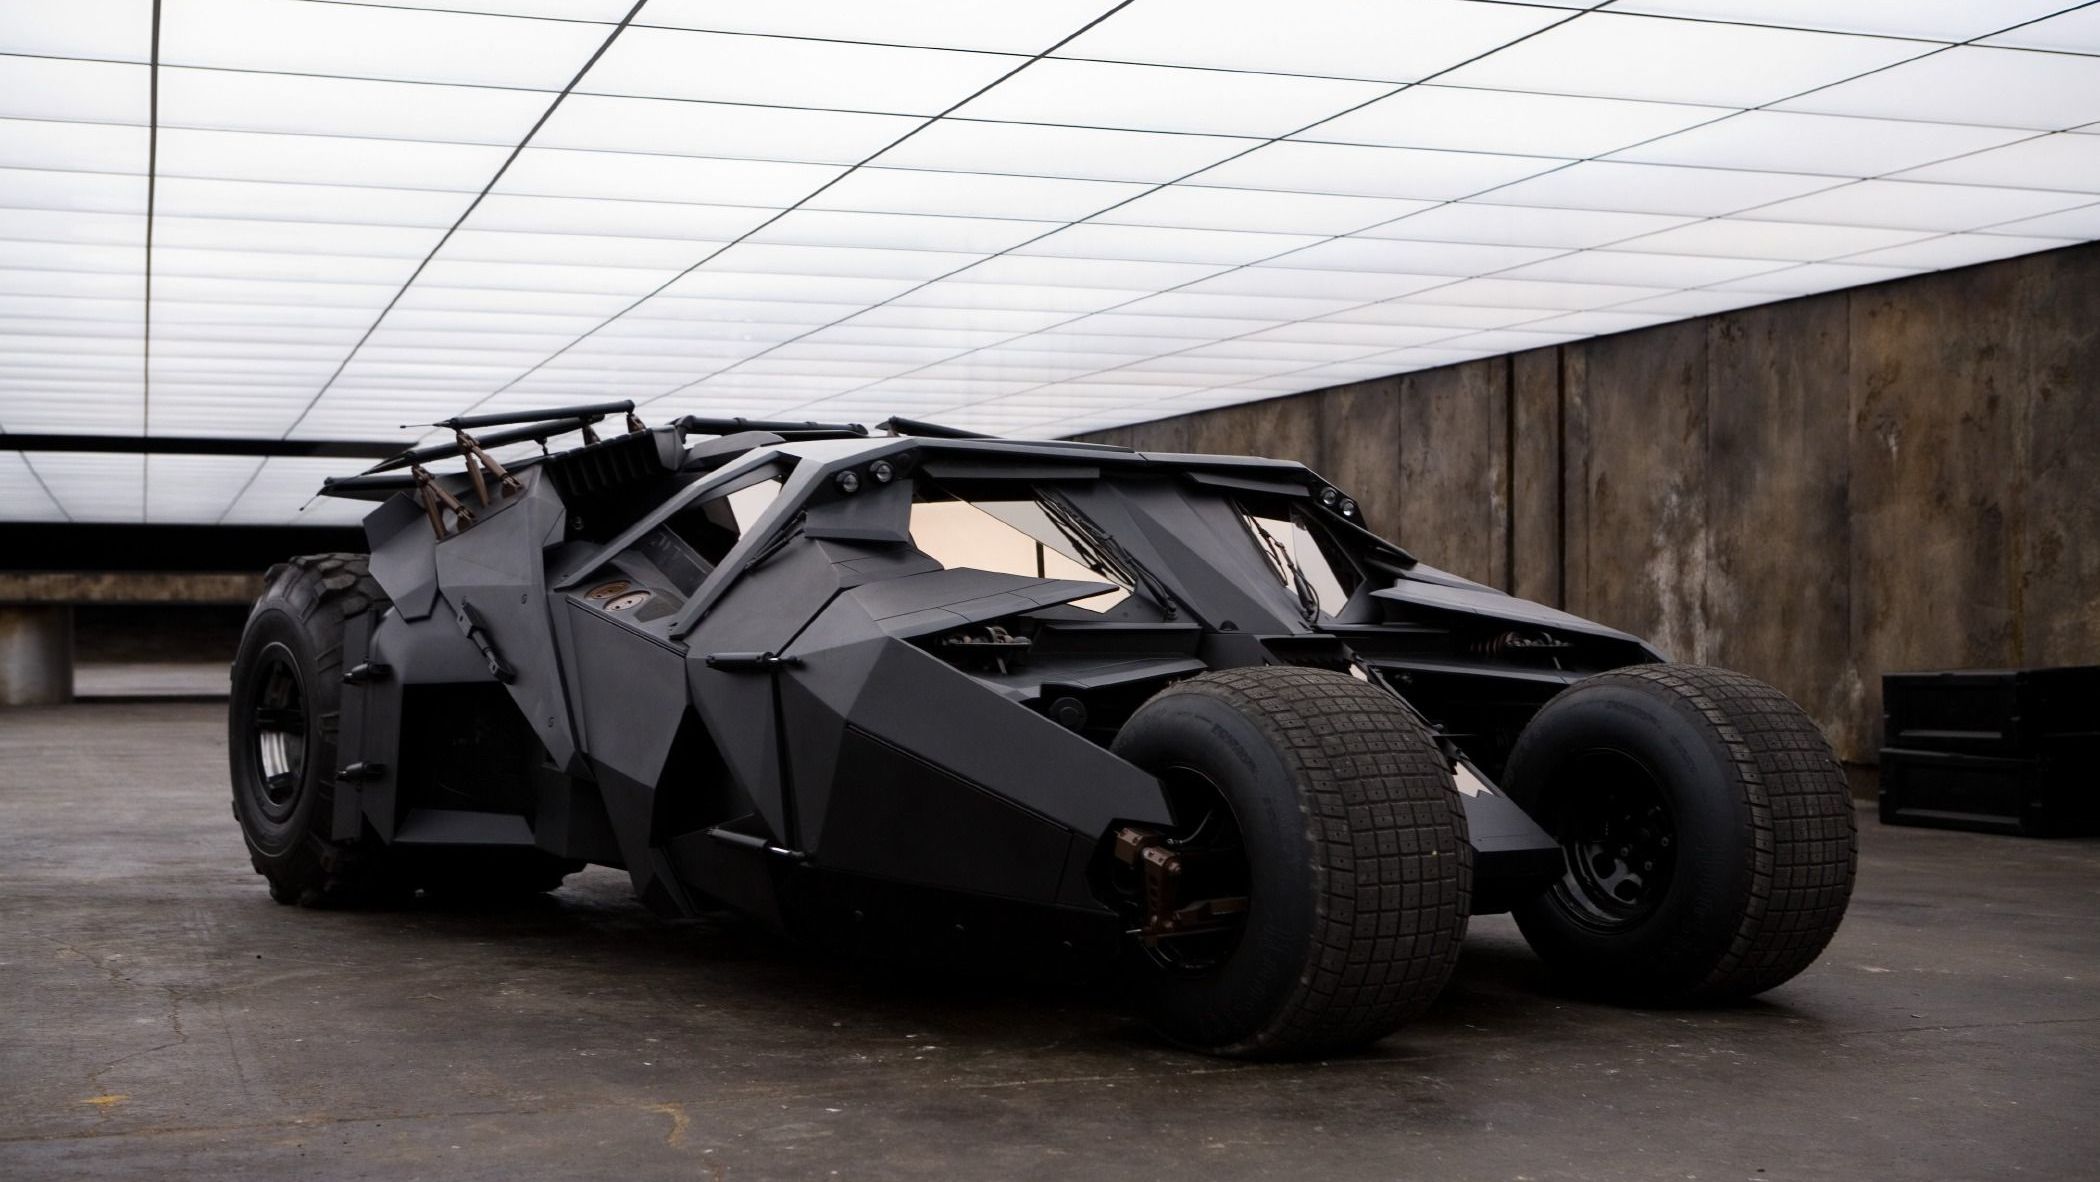 Uitslag POLL: The Tumbler veruit de geliefdste Batmobile